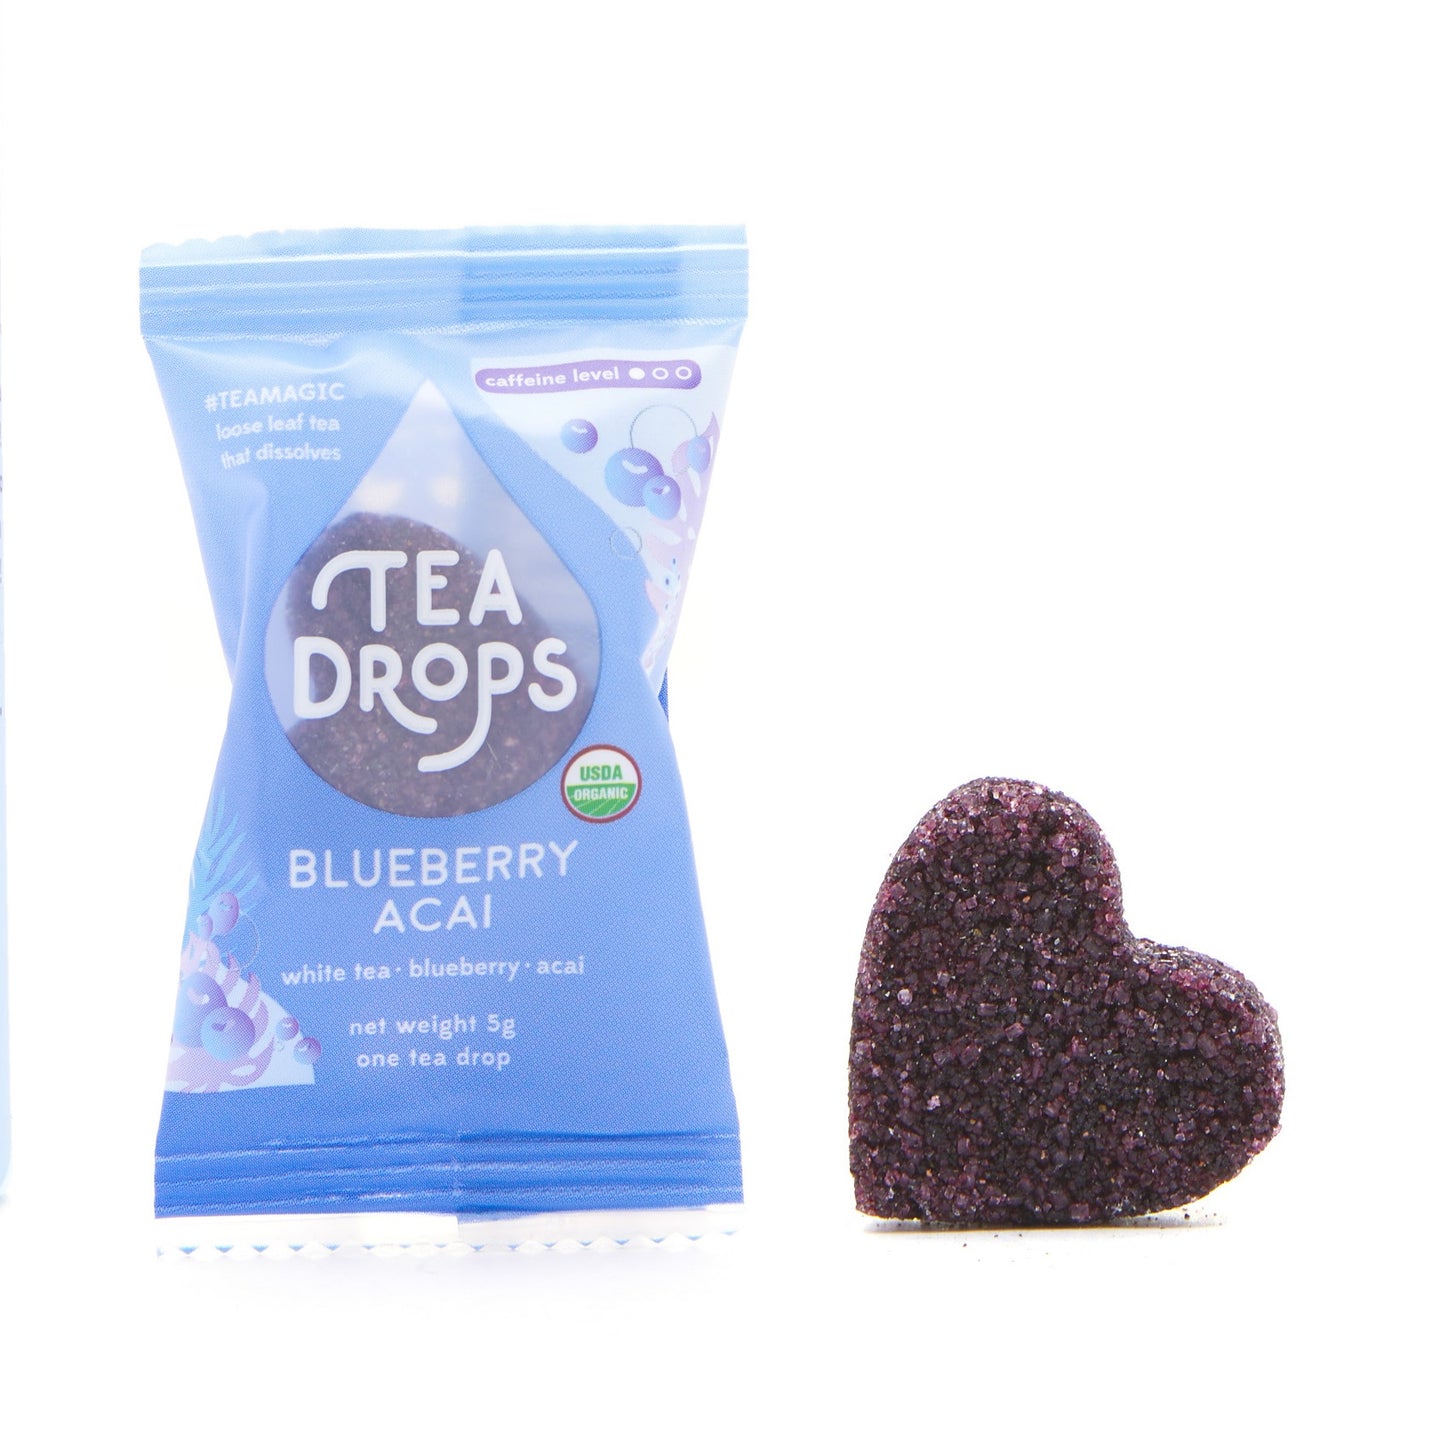 Tea Drops - Blueberry Acai White Tea